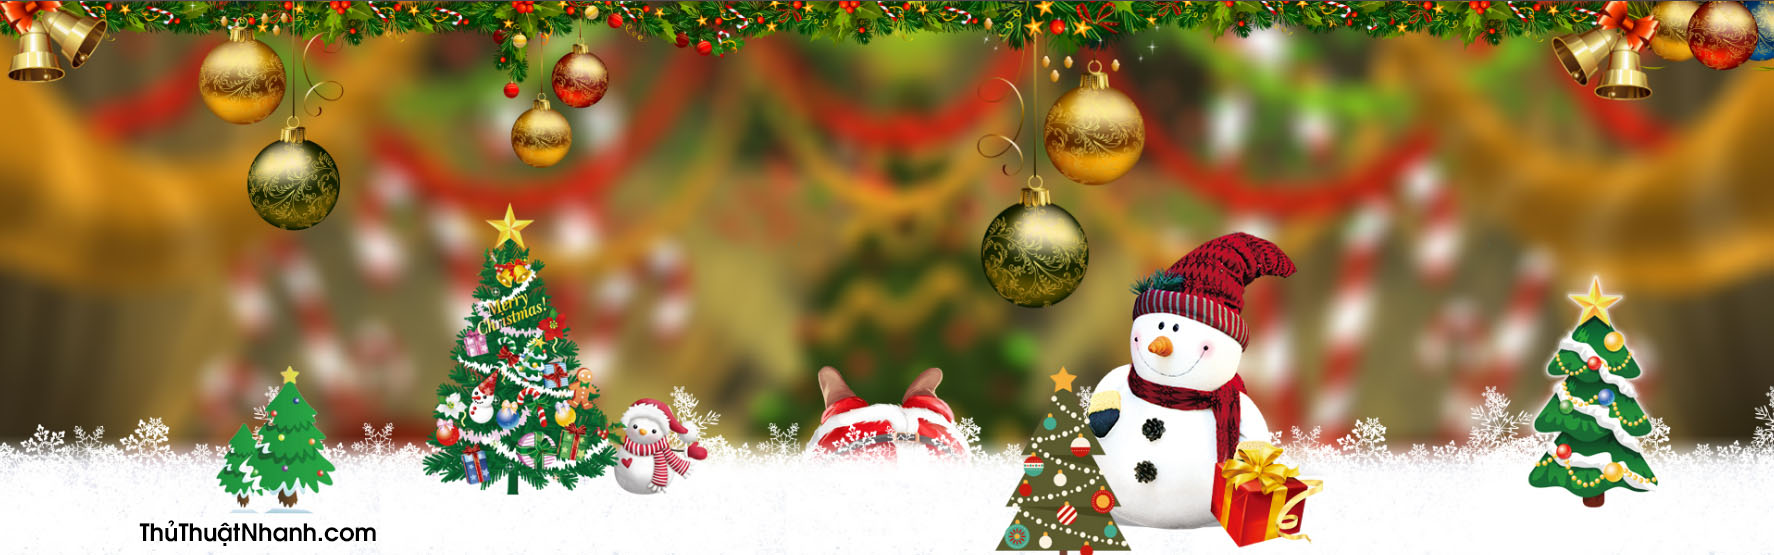 Giáng Sinh là ngày lễ đặc biệt, và ảnh bìa Giáng Sinh chính là cách tuyệt vời để tôn vinh ý nghĩa của ngày hội này. Với những mẫu thiết kế đẹp mắt, tinh tế và ấm áp, hãy khám phá bộ sưu tập ảnh bìa Giáng Sinh đầy ấn tượng của chúng tôi để trang trí cho trang Facebook của bạn.